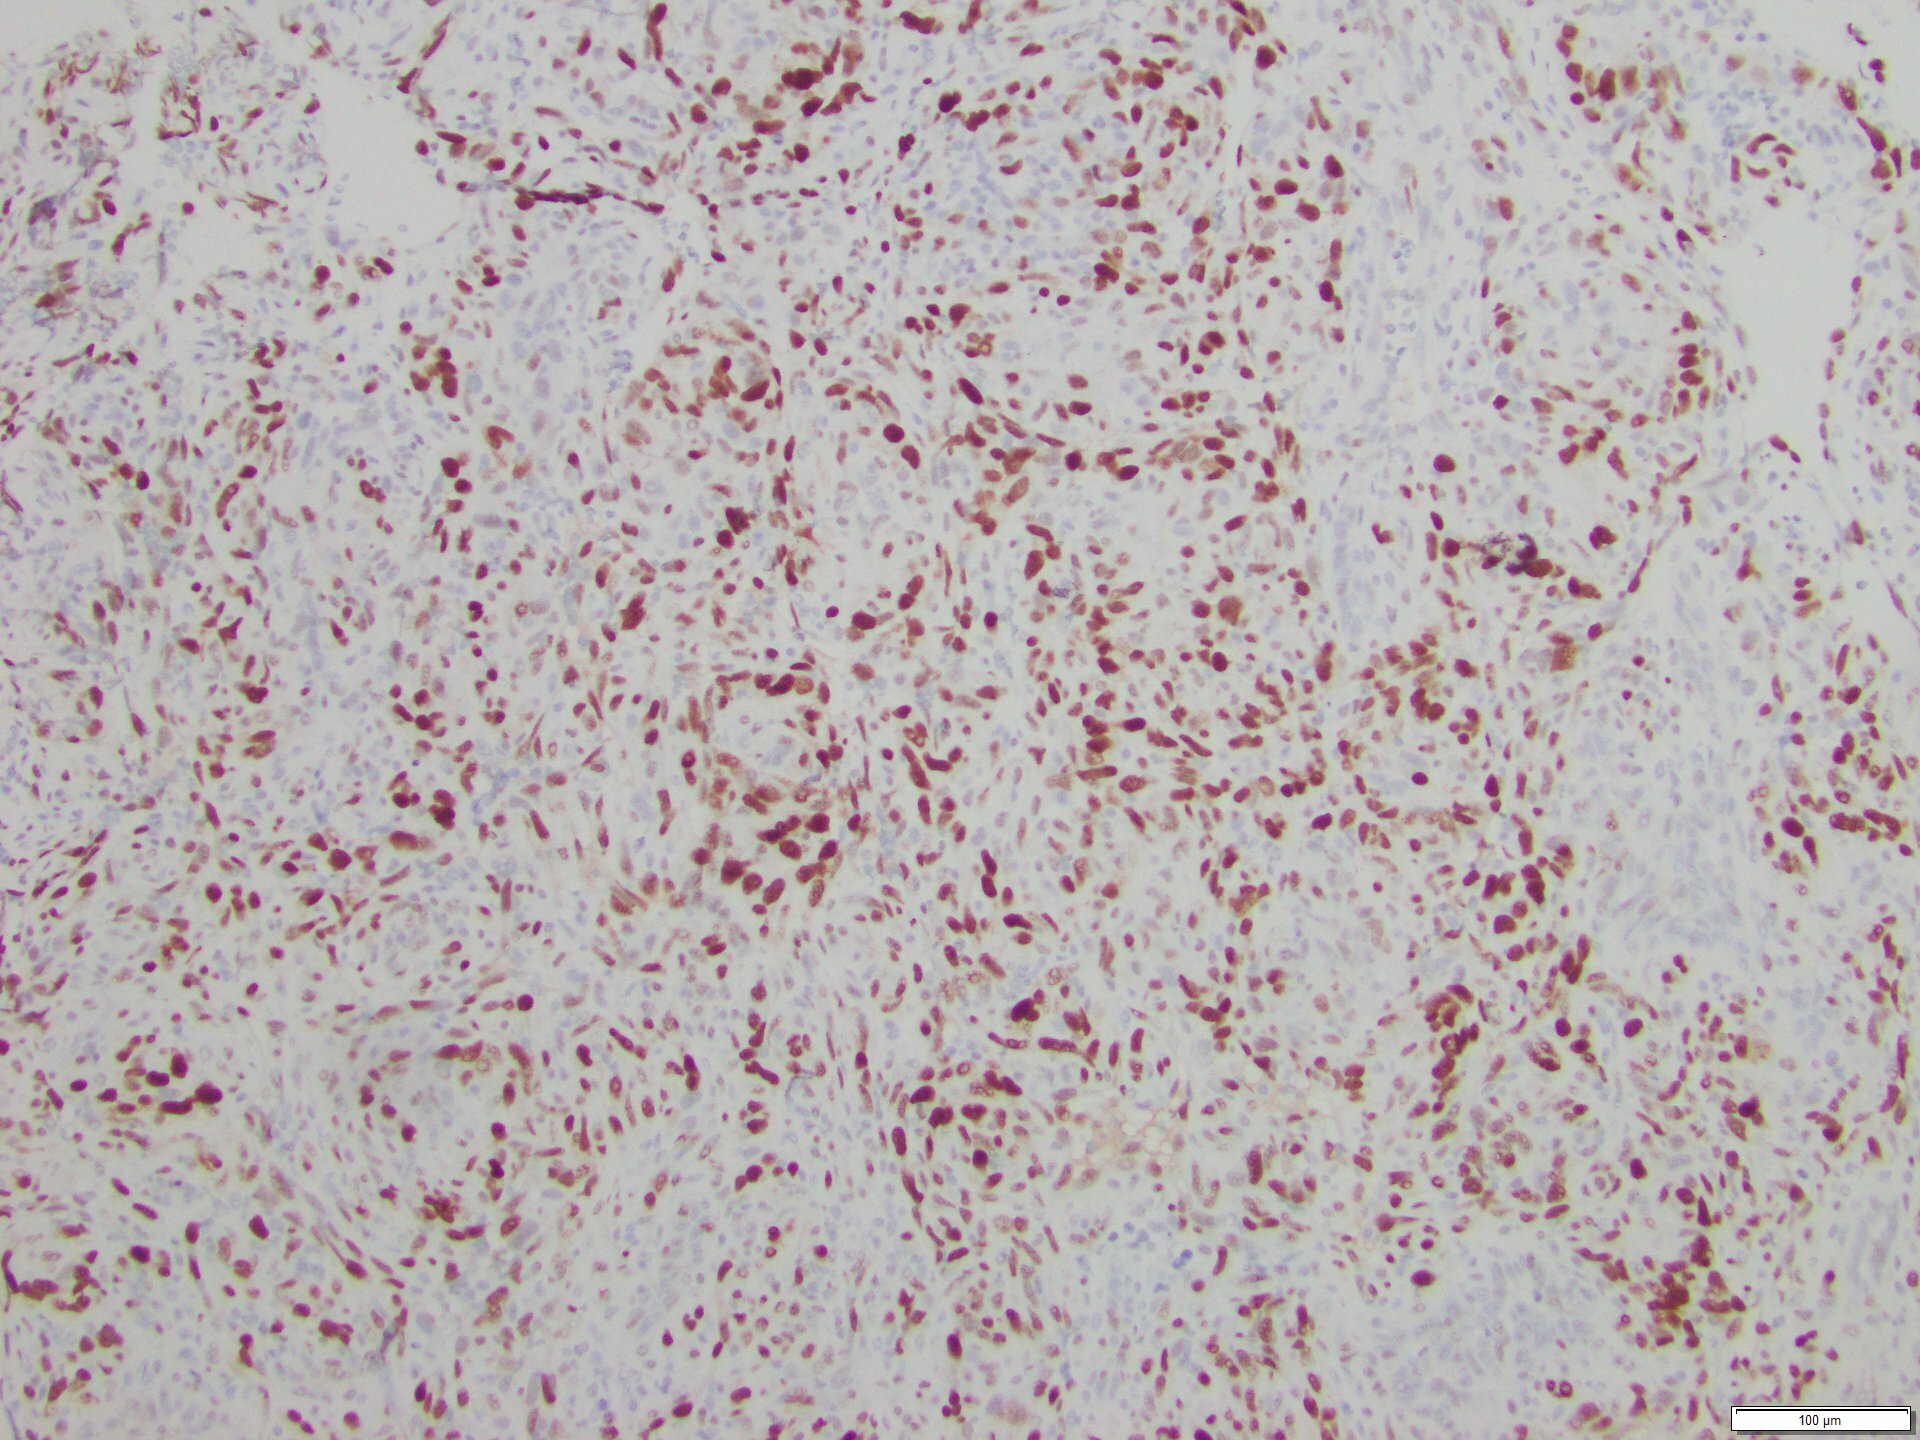 Figure 5. Positive c-MYC immunohistochemical staining.